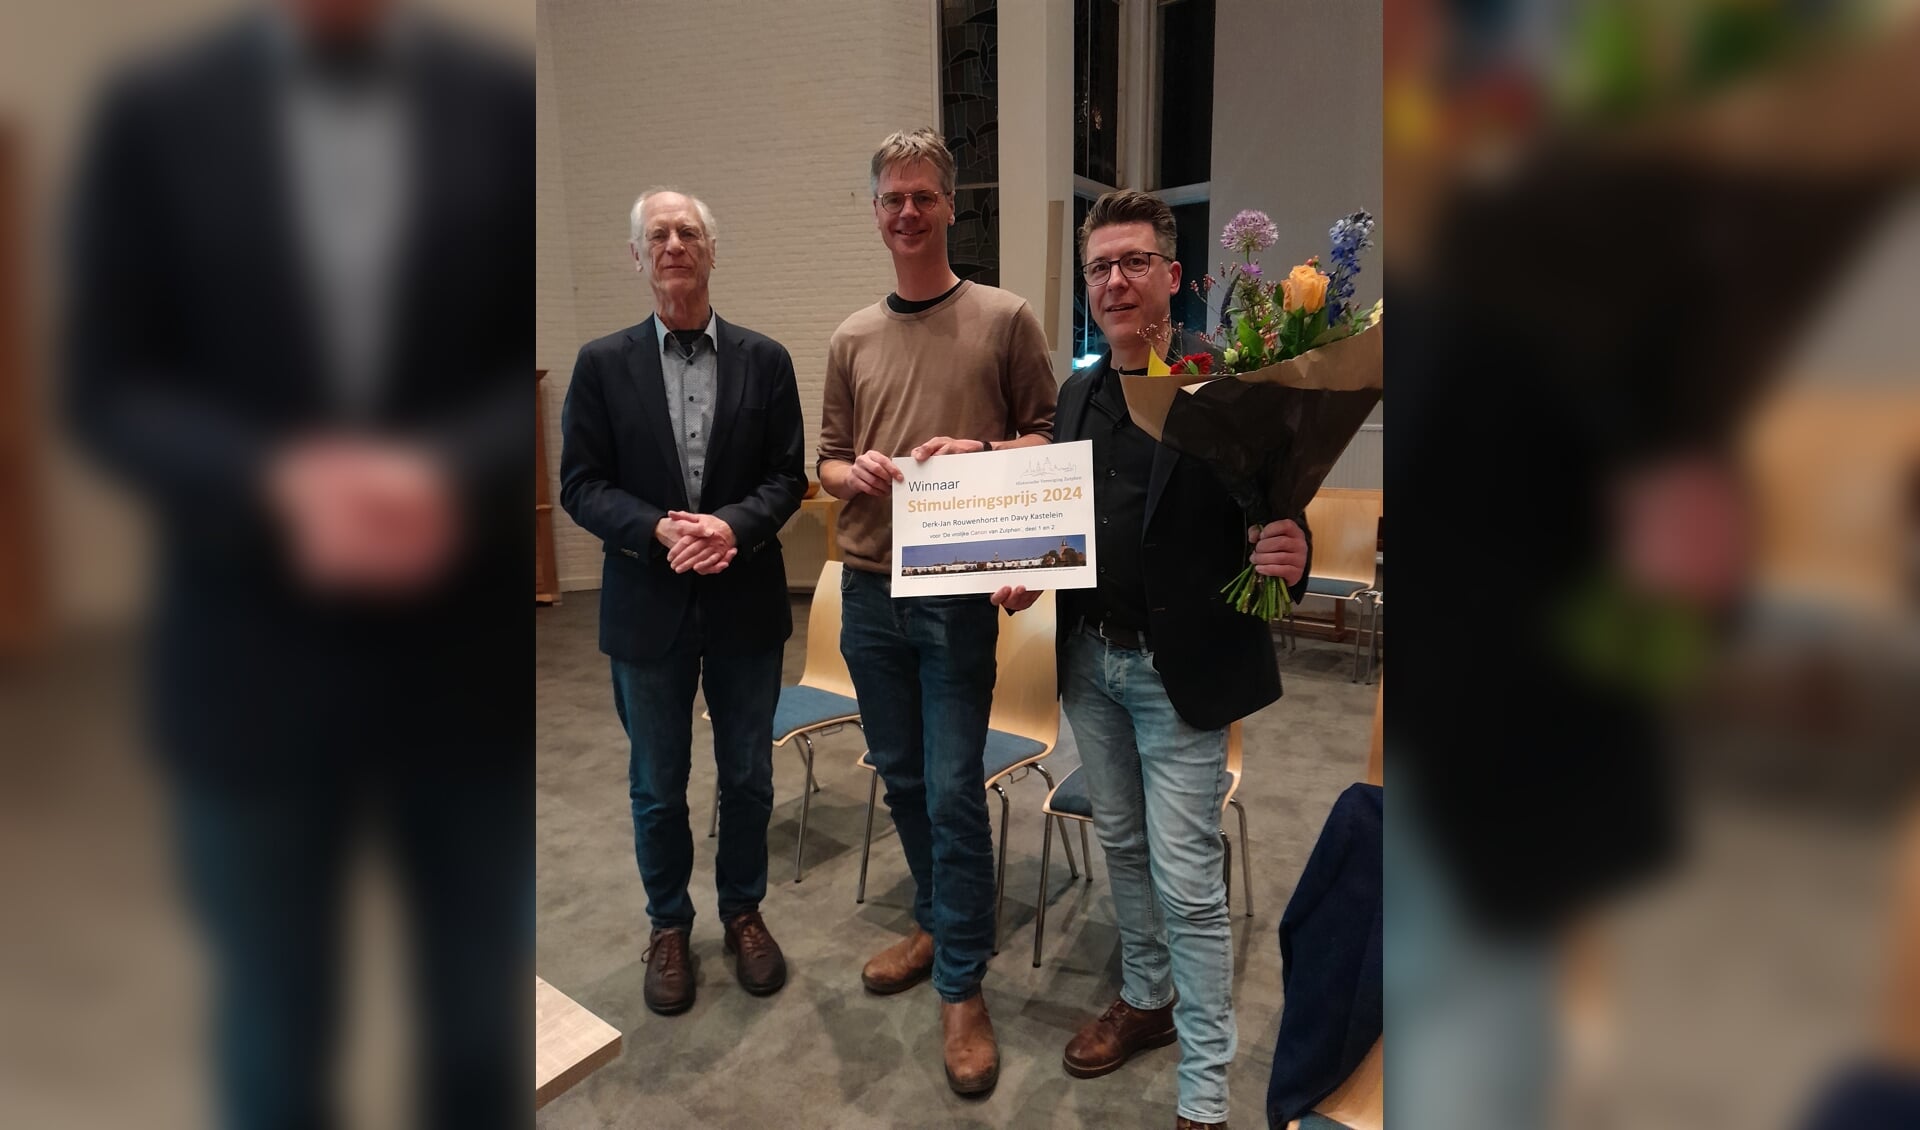 Davy Kastelein en Derk-Jan Rouwenhorst gingen met de Stimuleringsprijs van 250 euro naar huis. Foto: Ineke Hissink